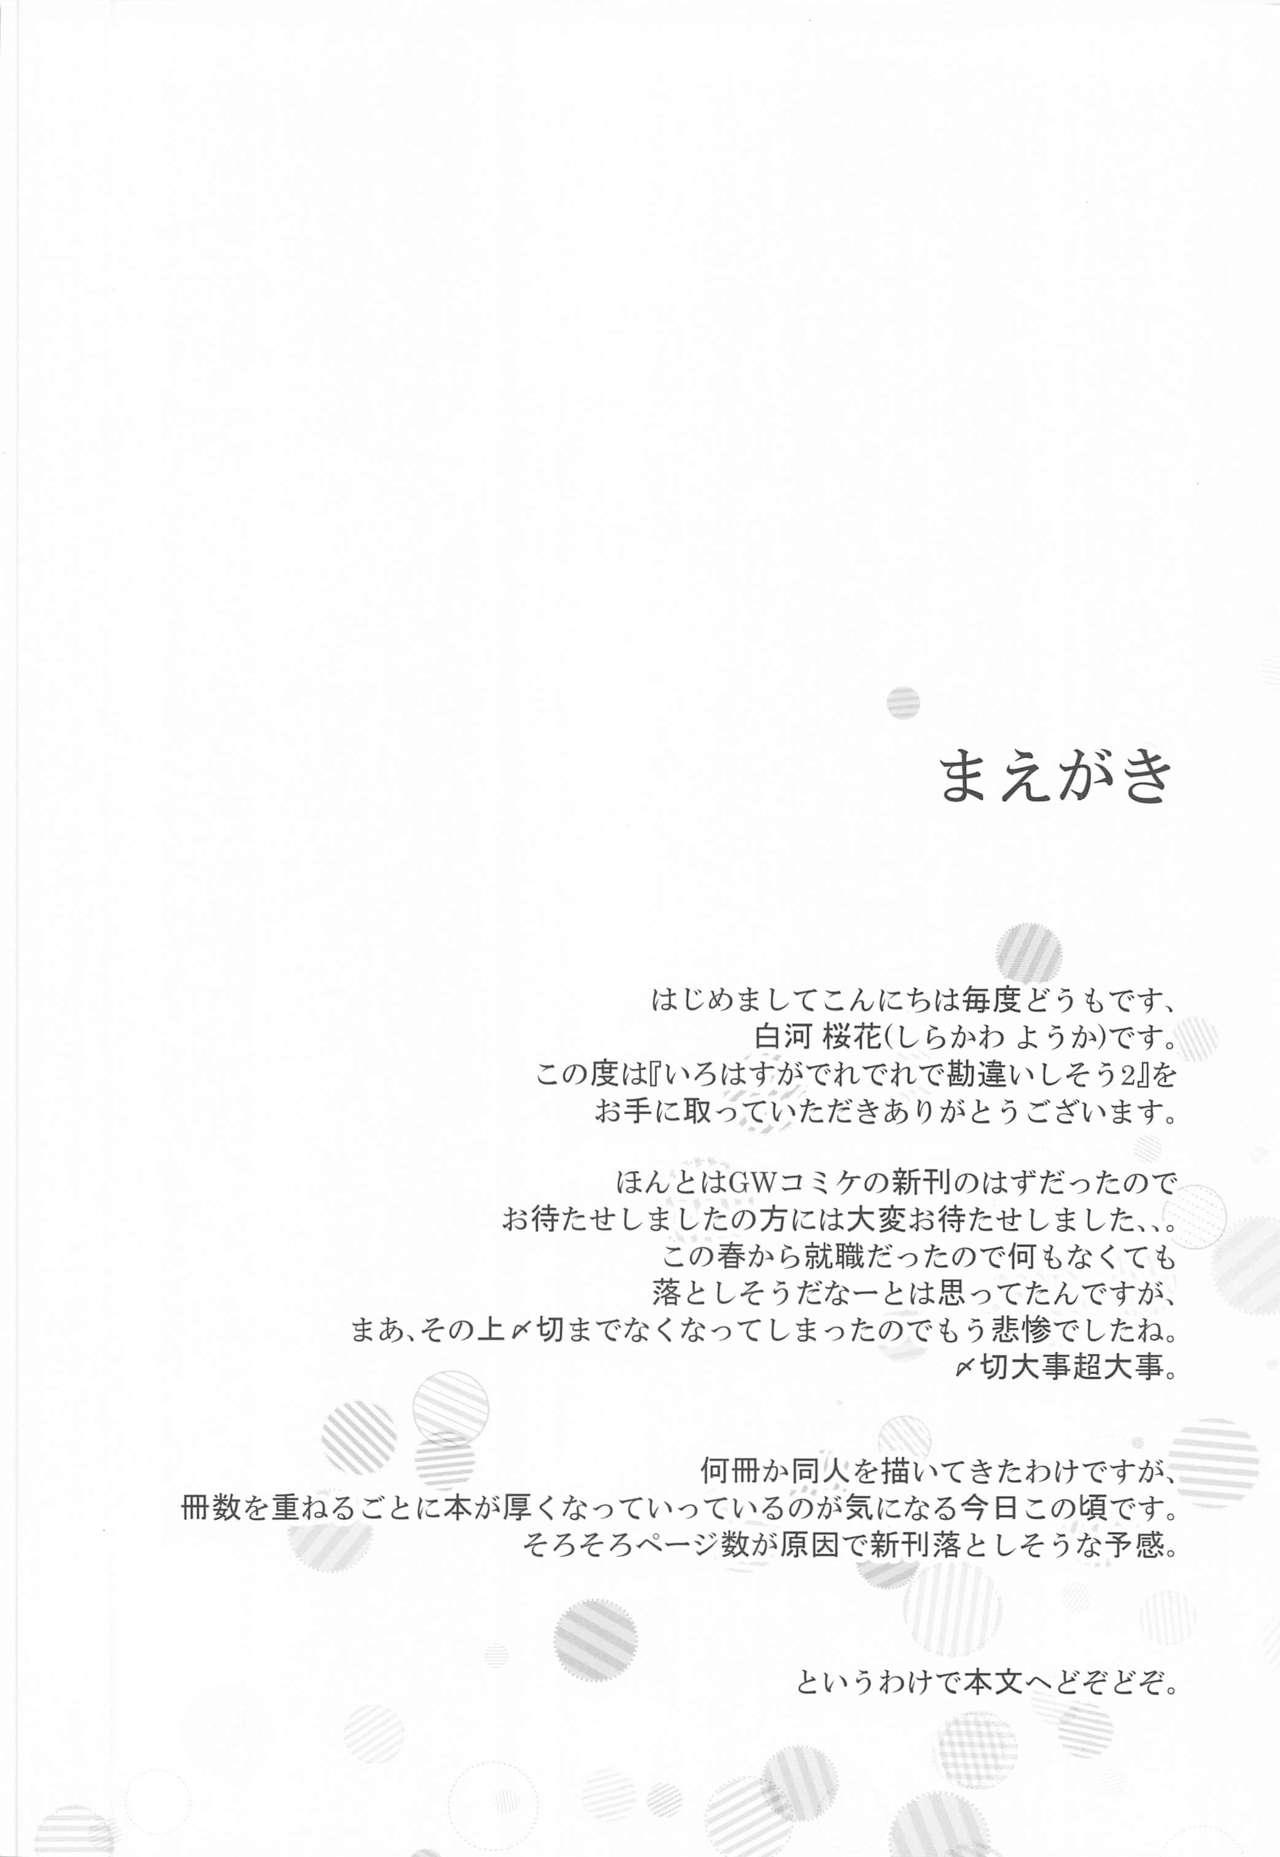 Funk Irohasu ga Deredere de Kanchigai Shisou 2 - Yahari ore no seishun love come wa machigatteiru Sexy Sluts - Page 3